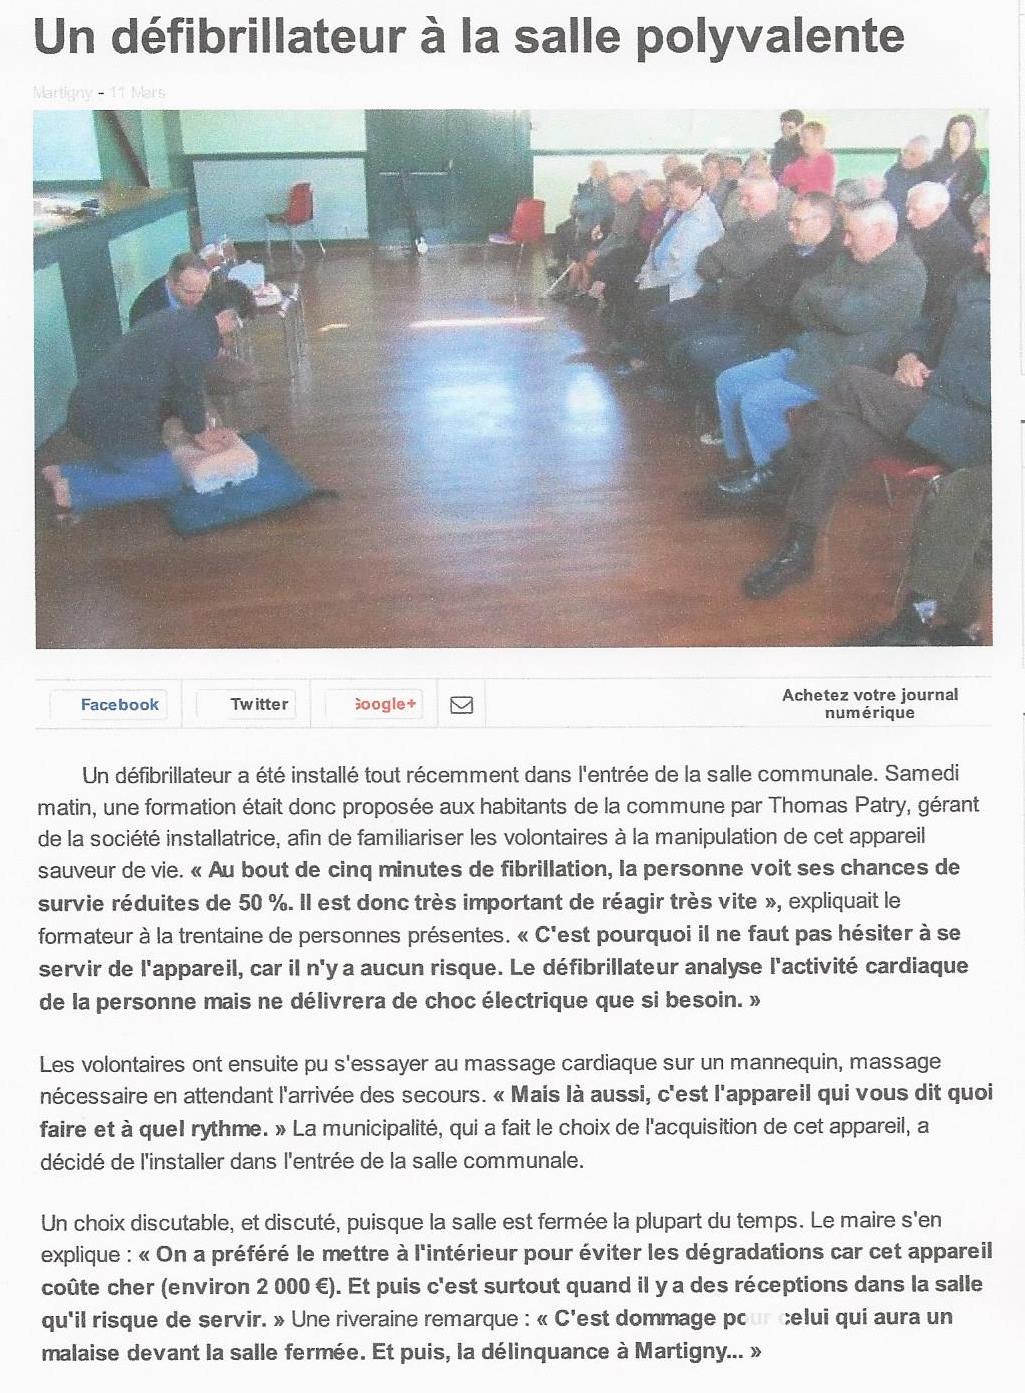 Defibrillateur Martigny (Manche) - Ouest France  13 mars 2014